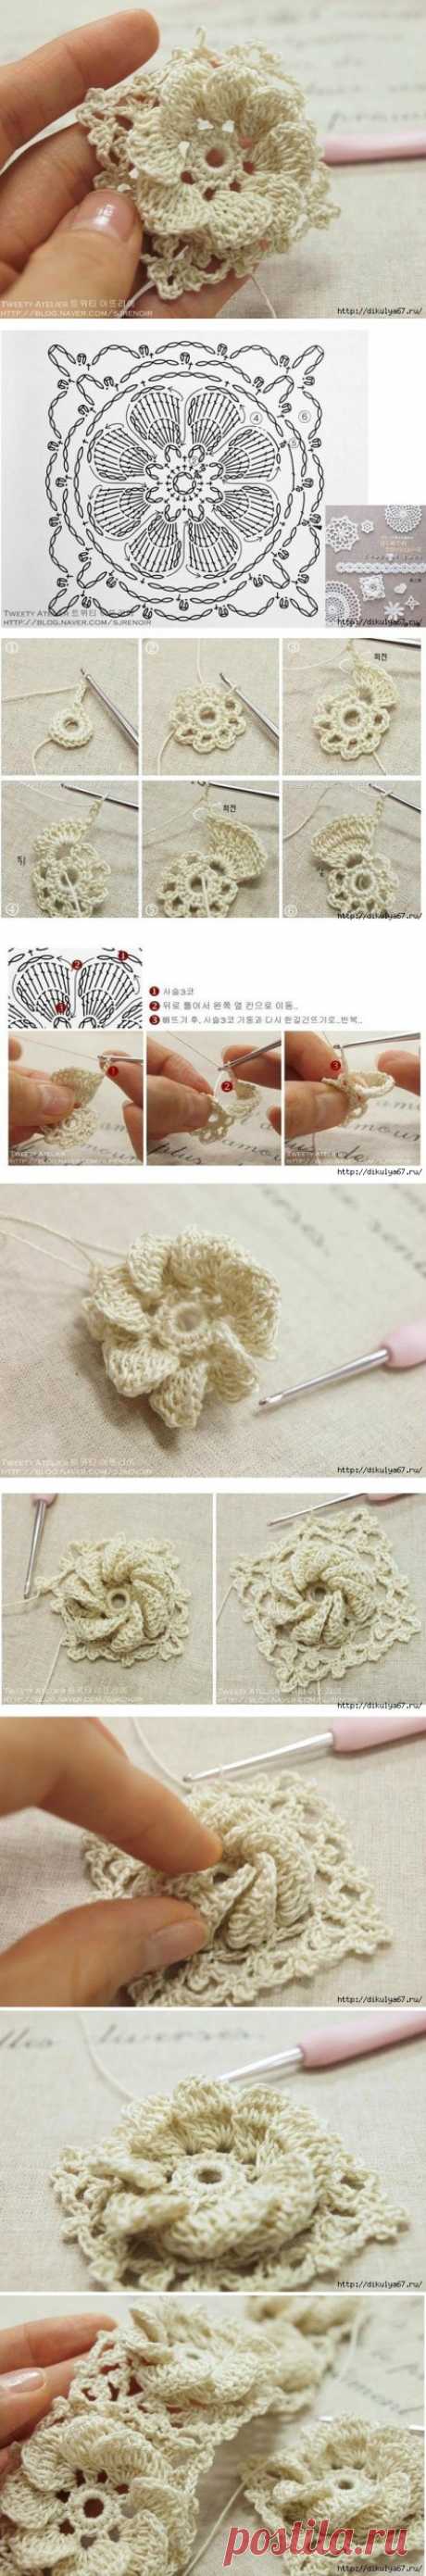 Nice crochet flower granny